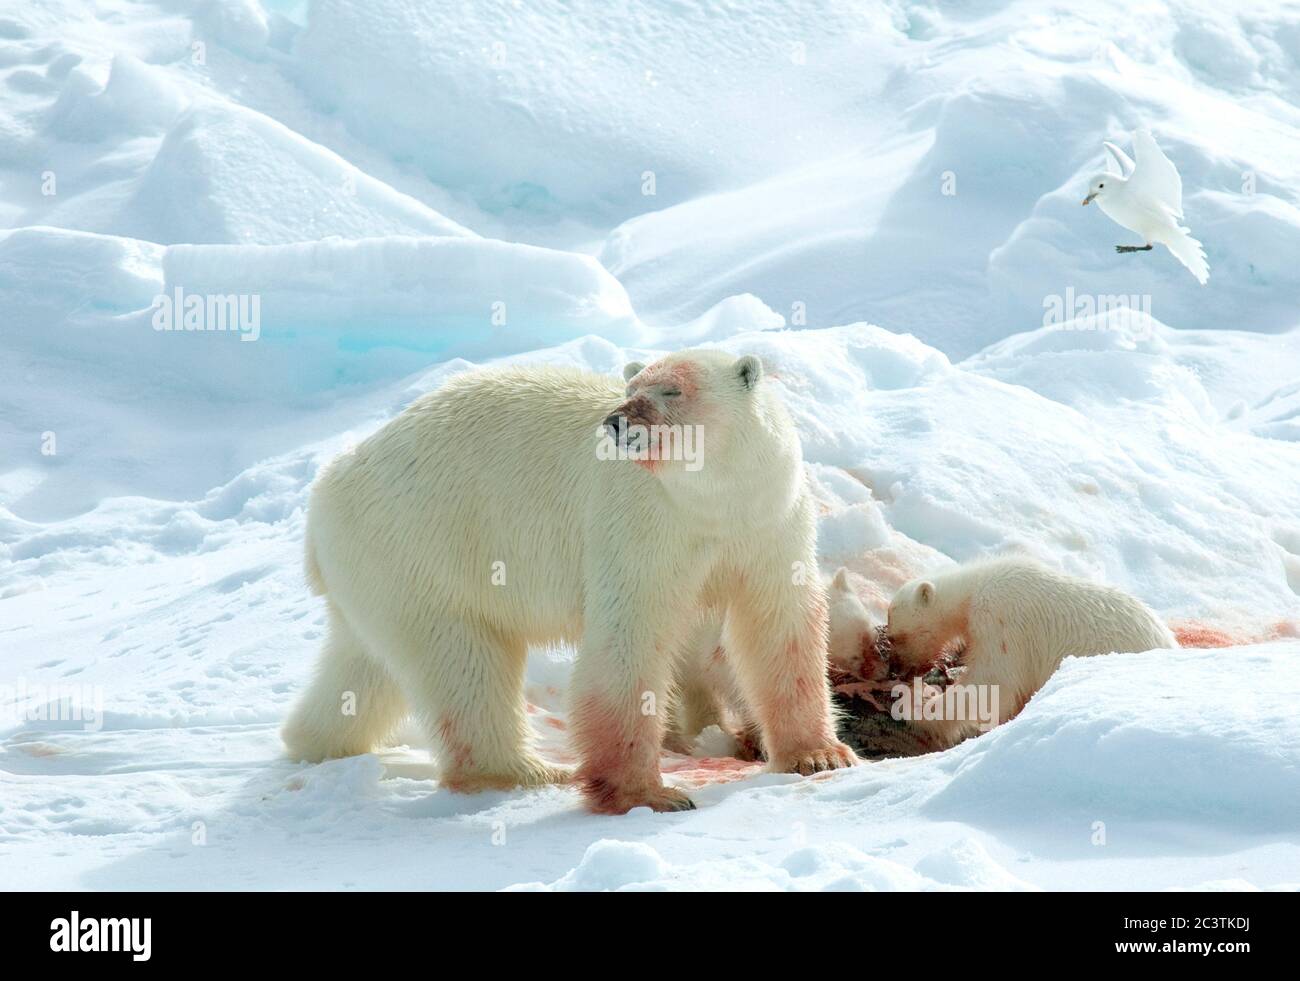 Ours polaire (Ursus maritimus), Béaresson polaire avec deux petits nourrissant un phoque, goéland ivoire en vol terrestre, Norvège, Svalbard Banque D'Images